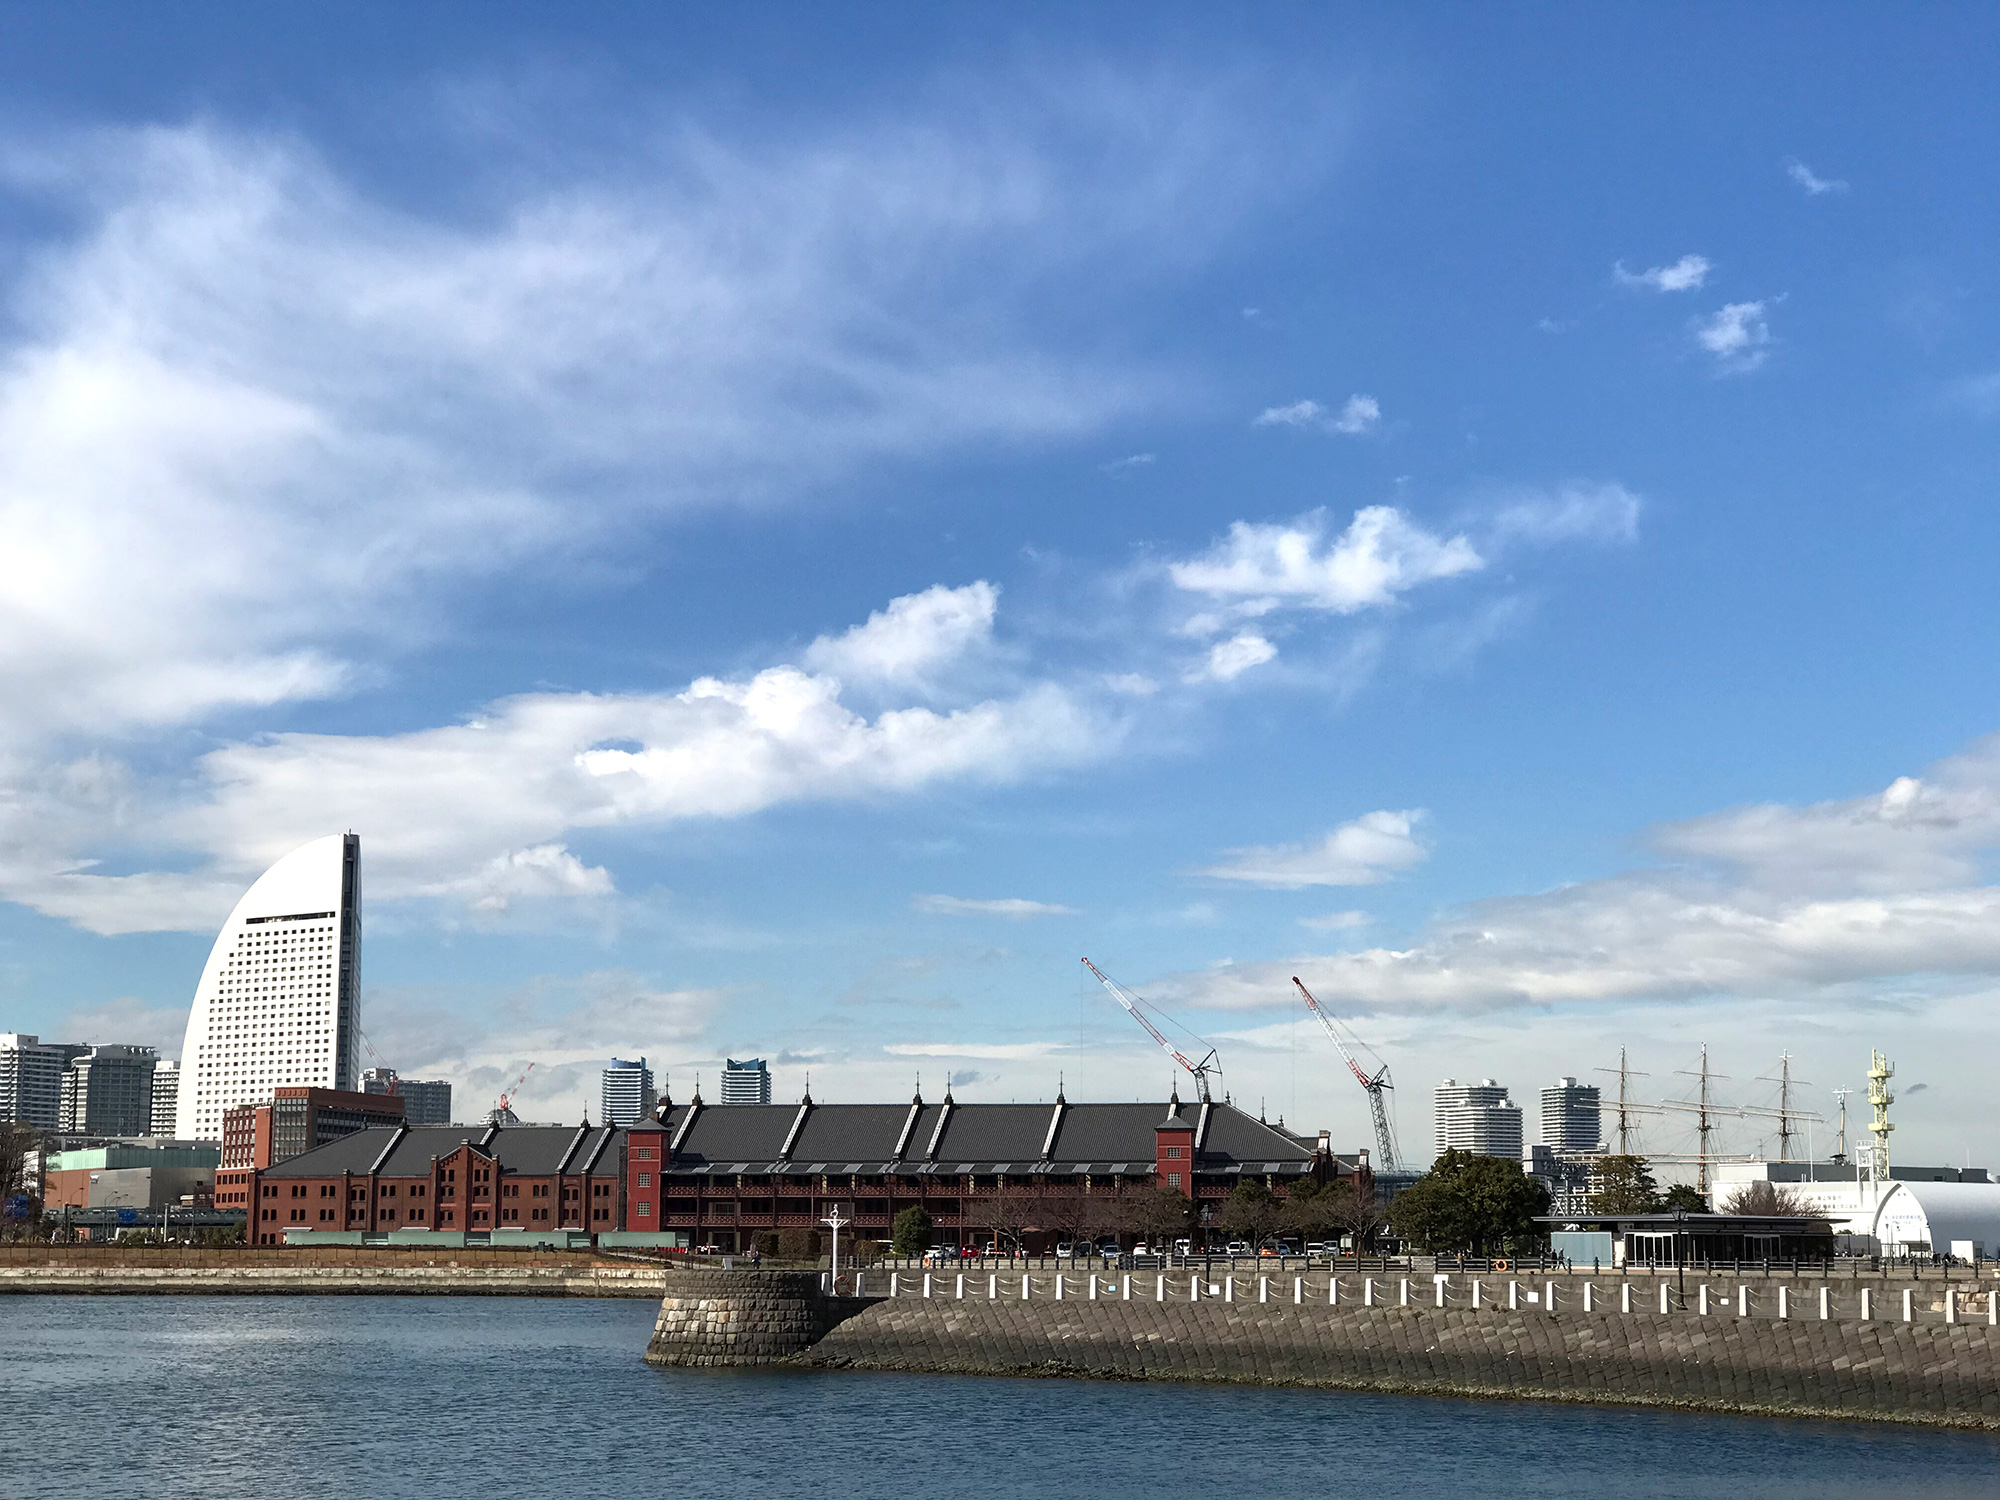 横浜赤レンガ倉庫の写真のフリー素材